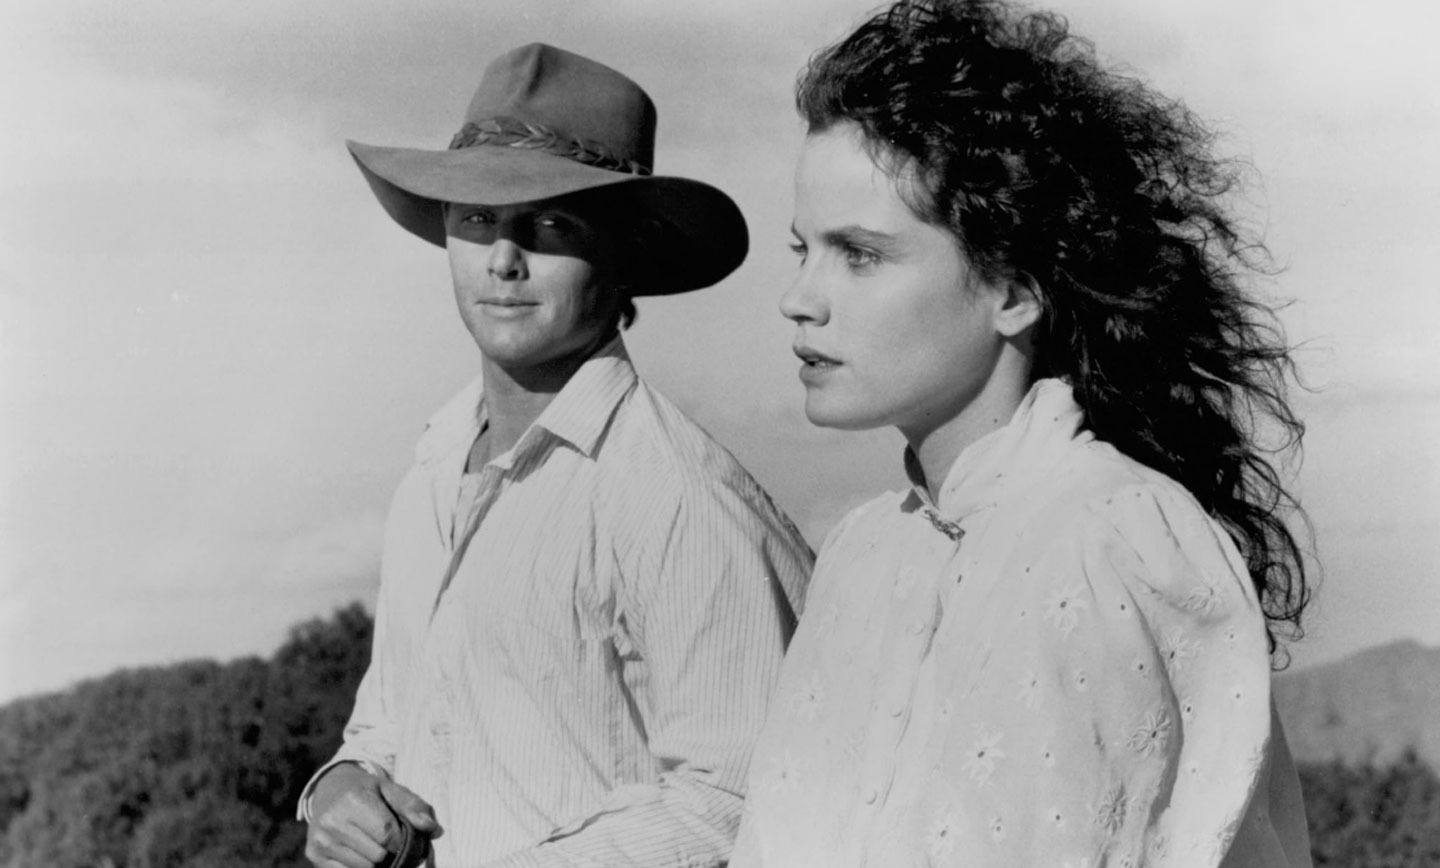 «بازگشت به رودخانه برفی» دنباله‌ای پرفراز و نشیب بر یک فیلم درام استرالیایی به همین نام است که در سال 1982 اکران شد